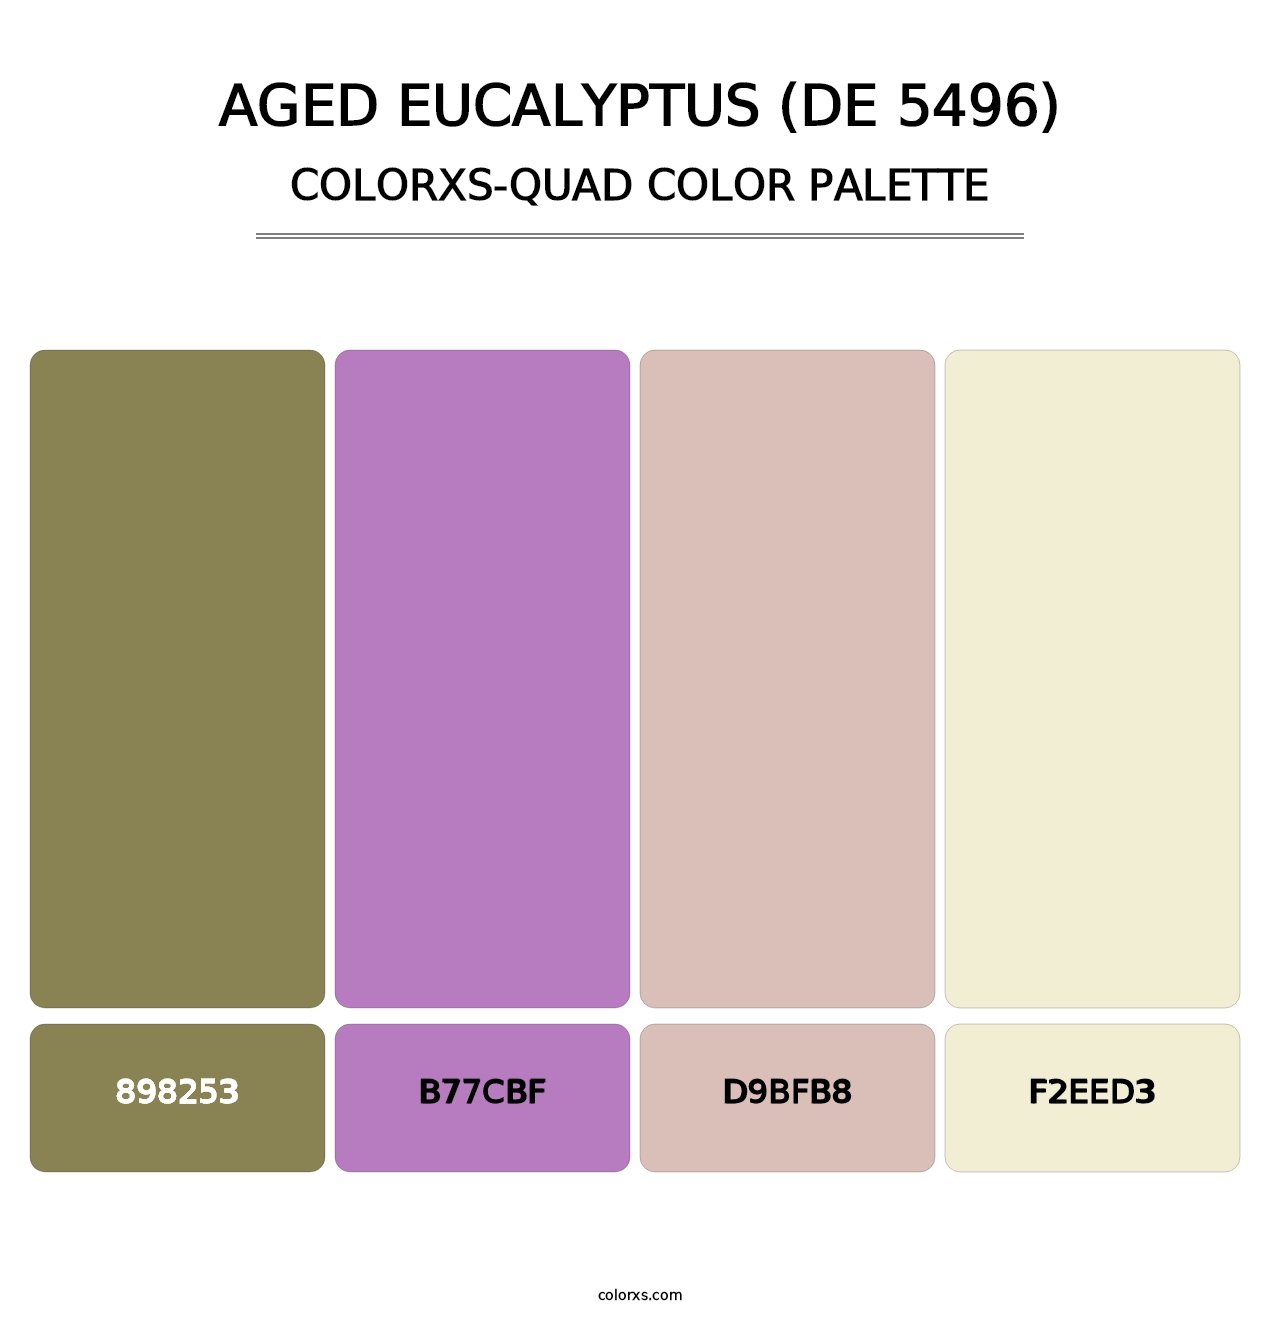 Aged Eucalyptus (DE 5496) - Colorxs Quad Palette